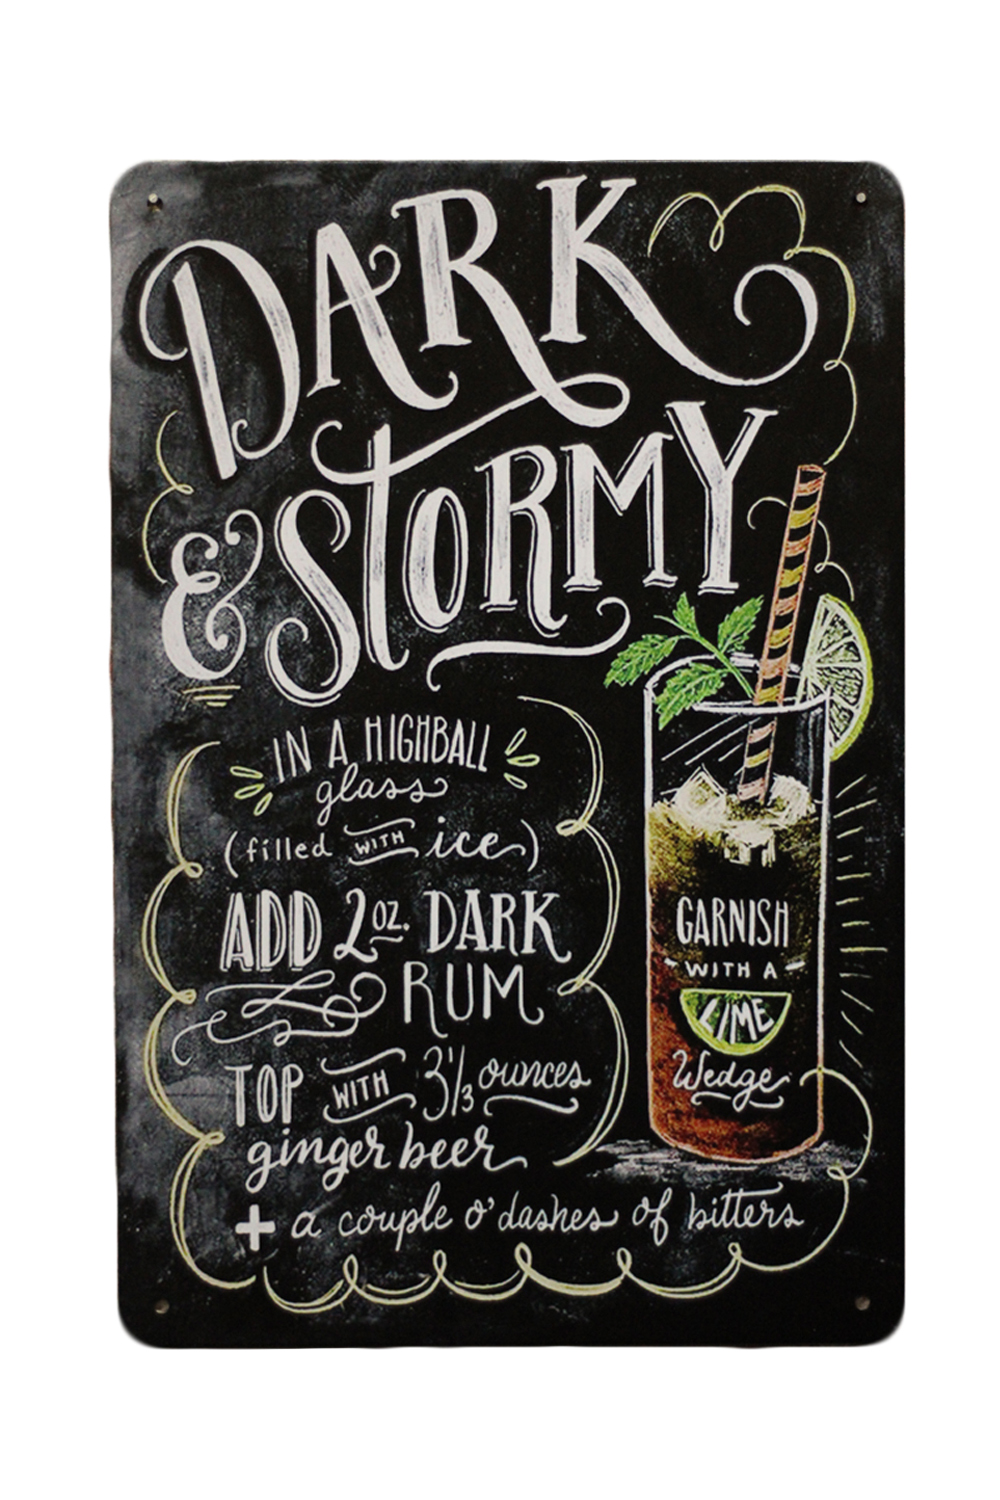 Dark stormy – Metalen borden